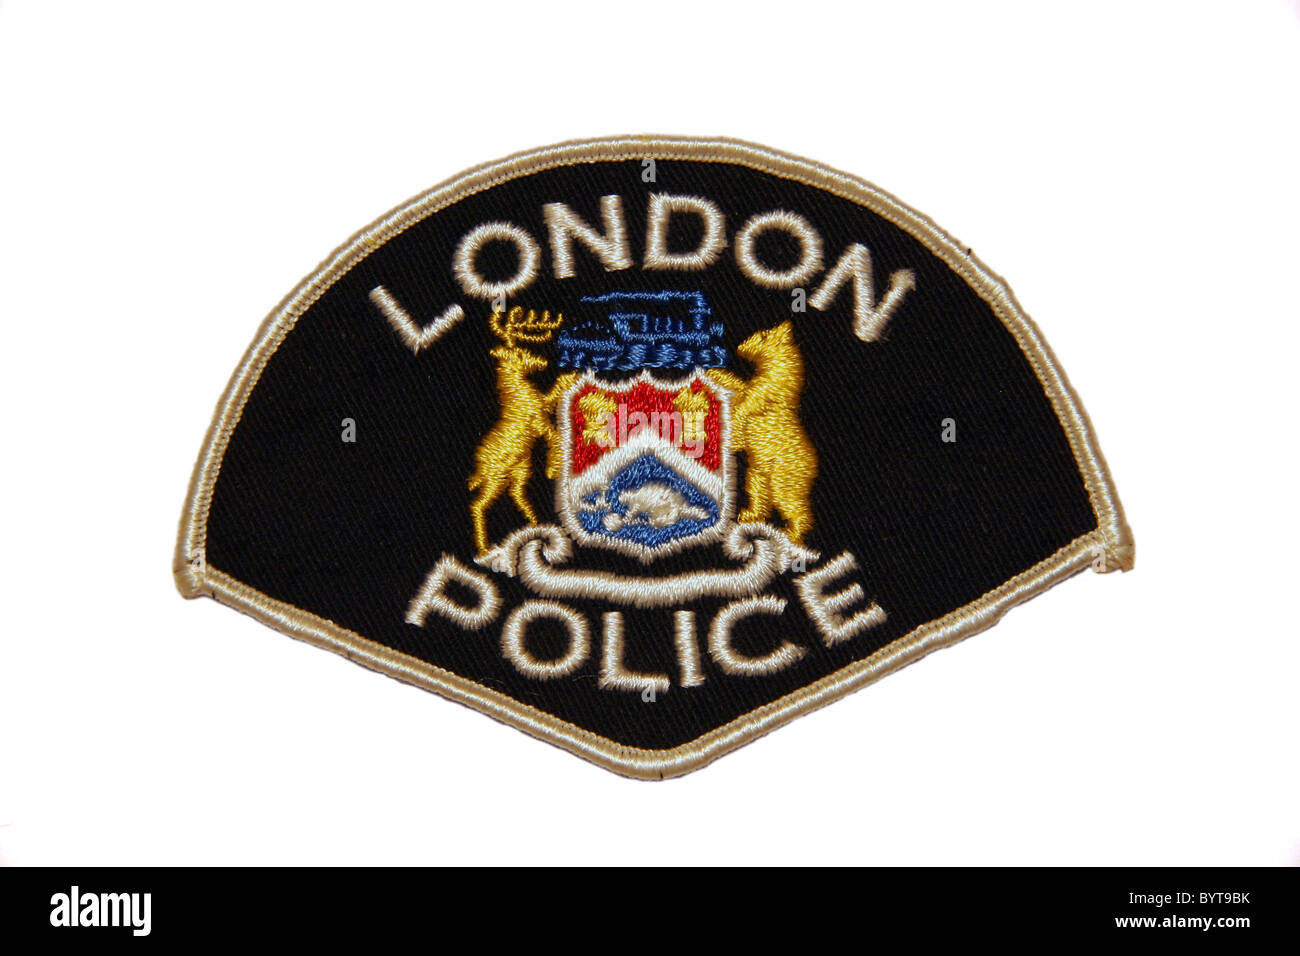 London Ontario Police patch Stockfoto